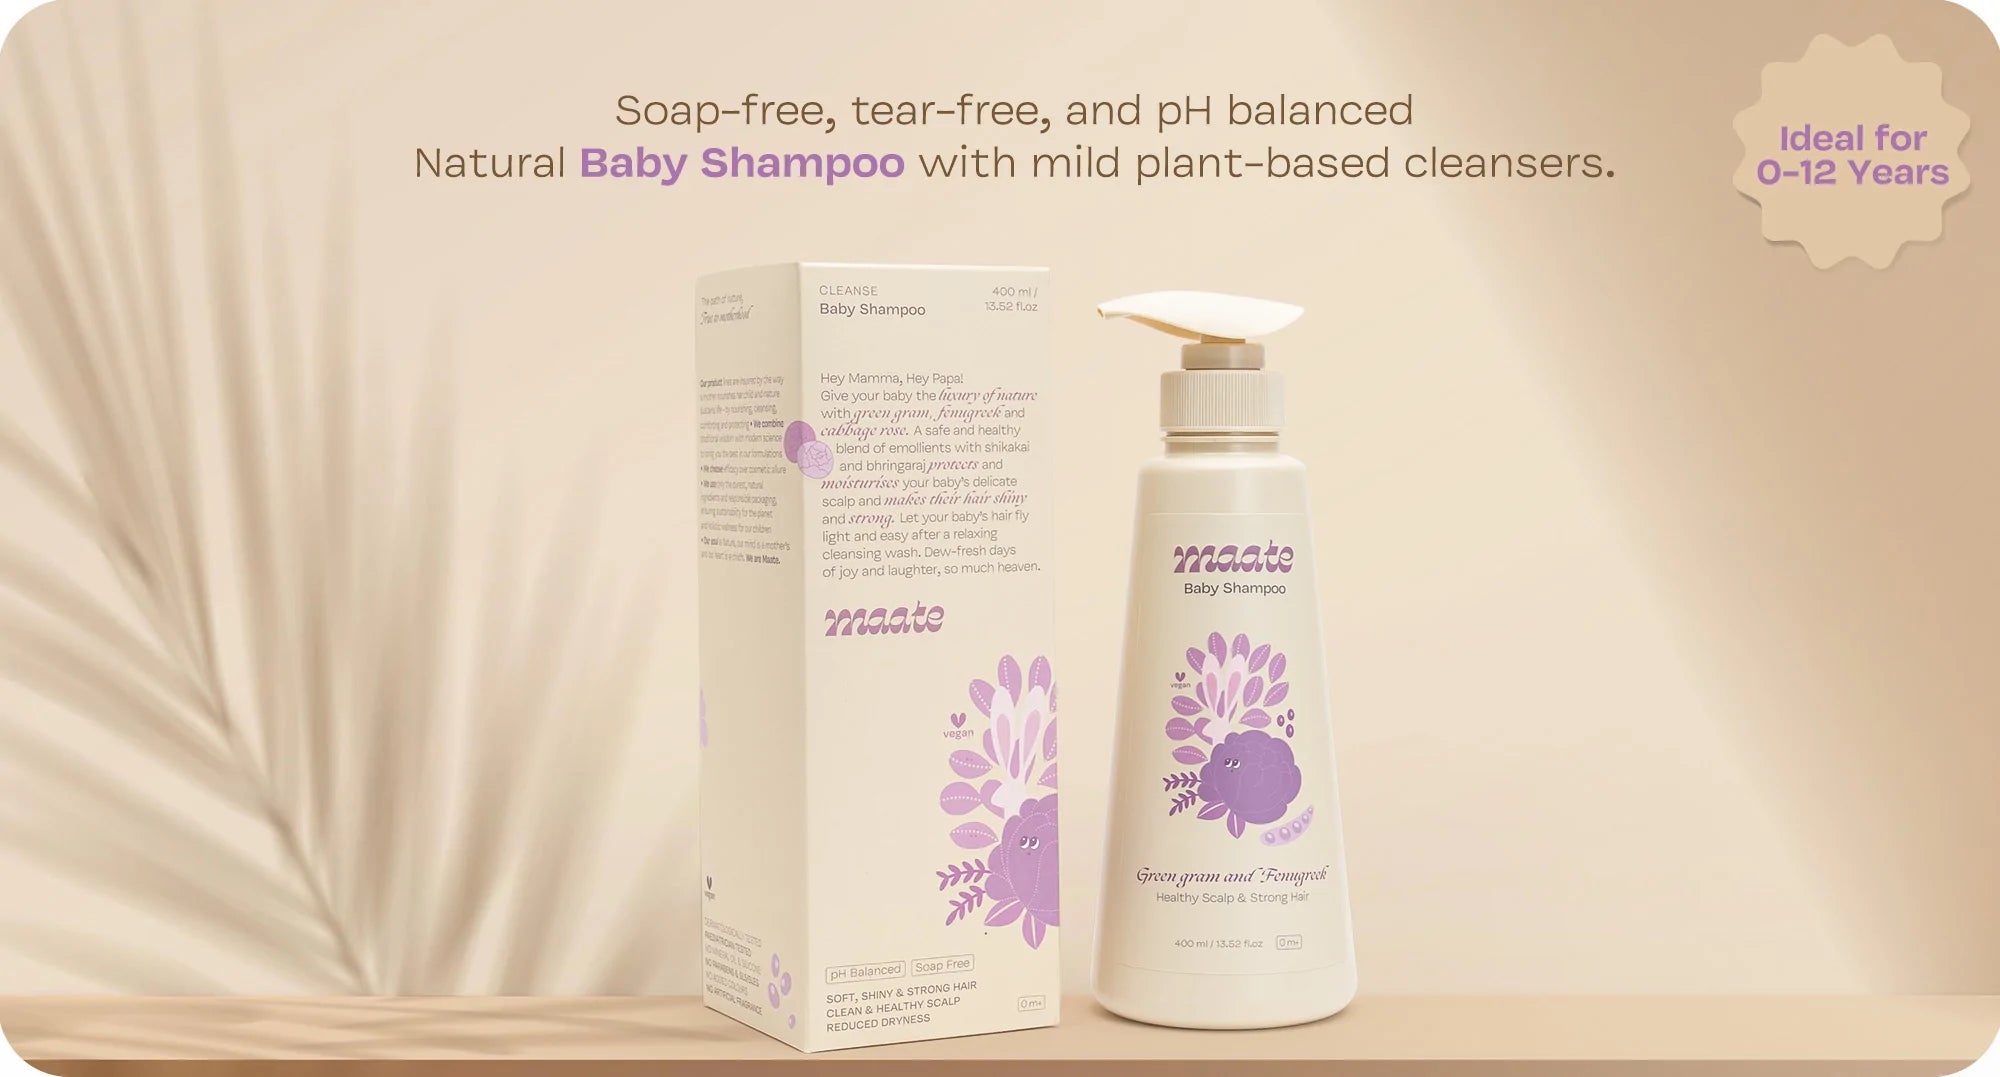 Baby Shampoo Pack of 2 - 400 ML